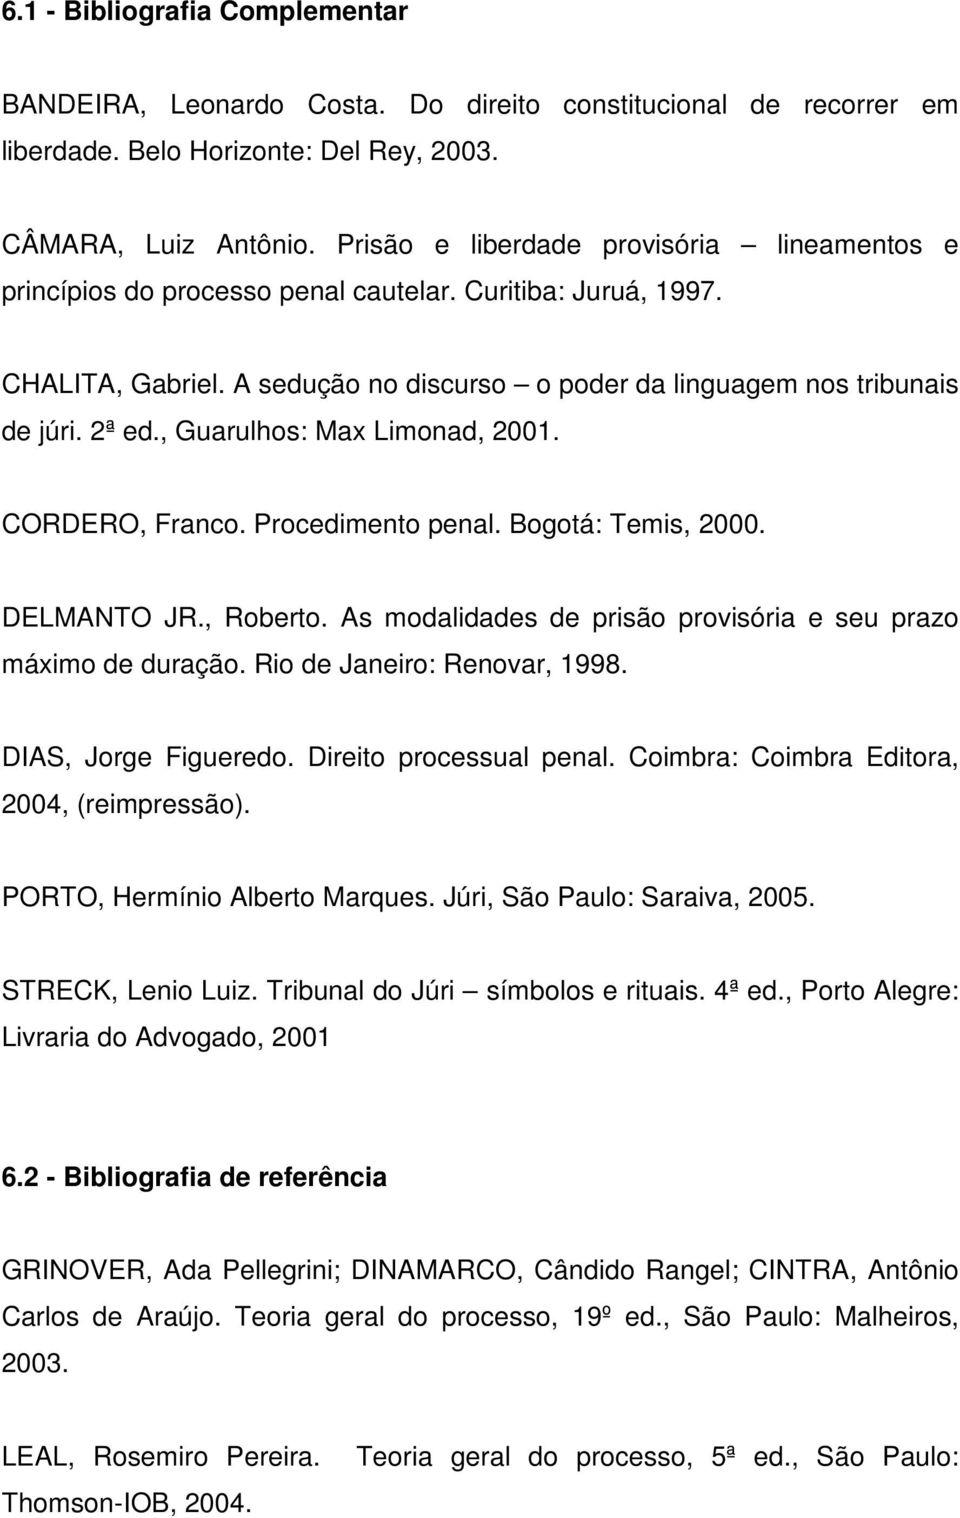 , Guarulhos: Max Limonad, 2001. CORDERO, Franco. Procedimento penal. Bogotá: Temis, 2000. DELMANTO JR., Roberto. As modalidades de prisão provisória e seu prazo máximo de duração.